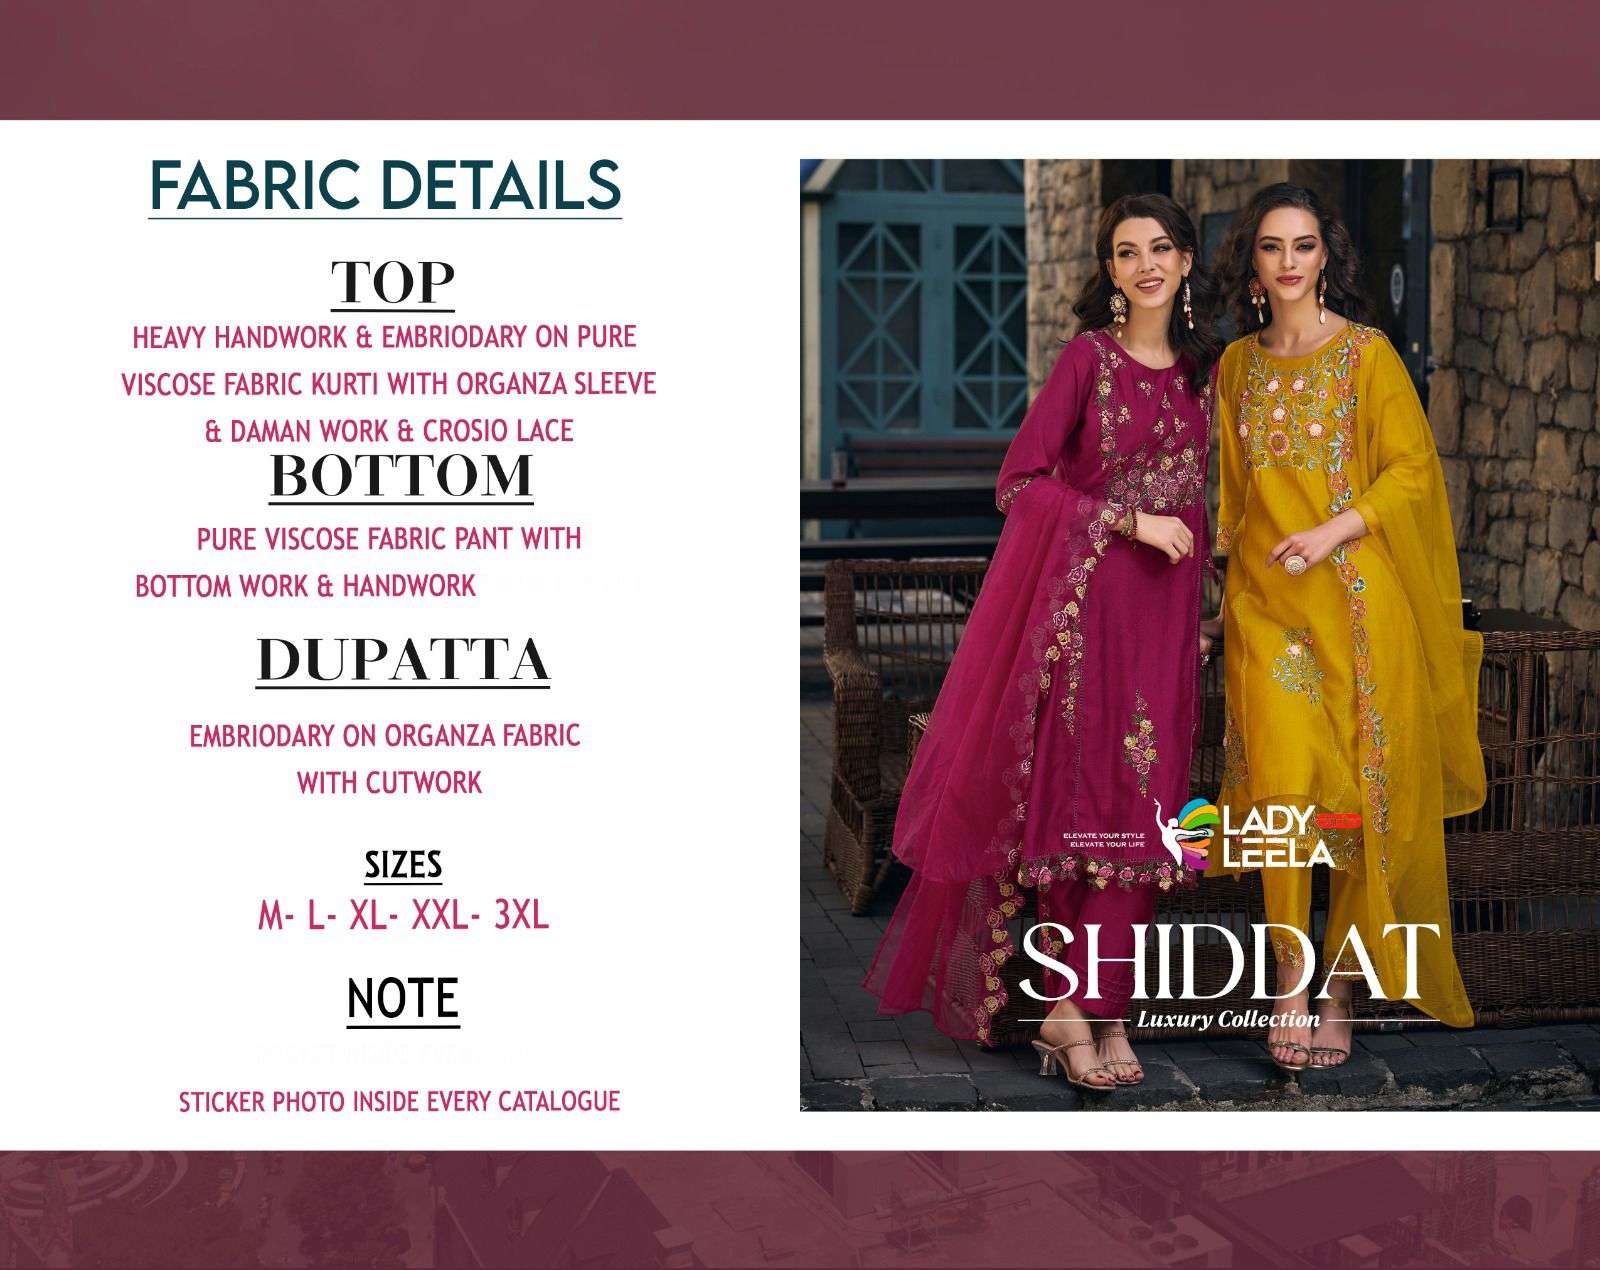 lady leela shiddat 1031-1036 series designer wedding kurti set wholesaler surat gujarat